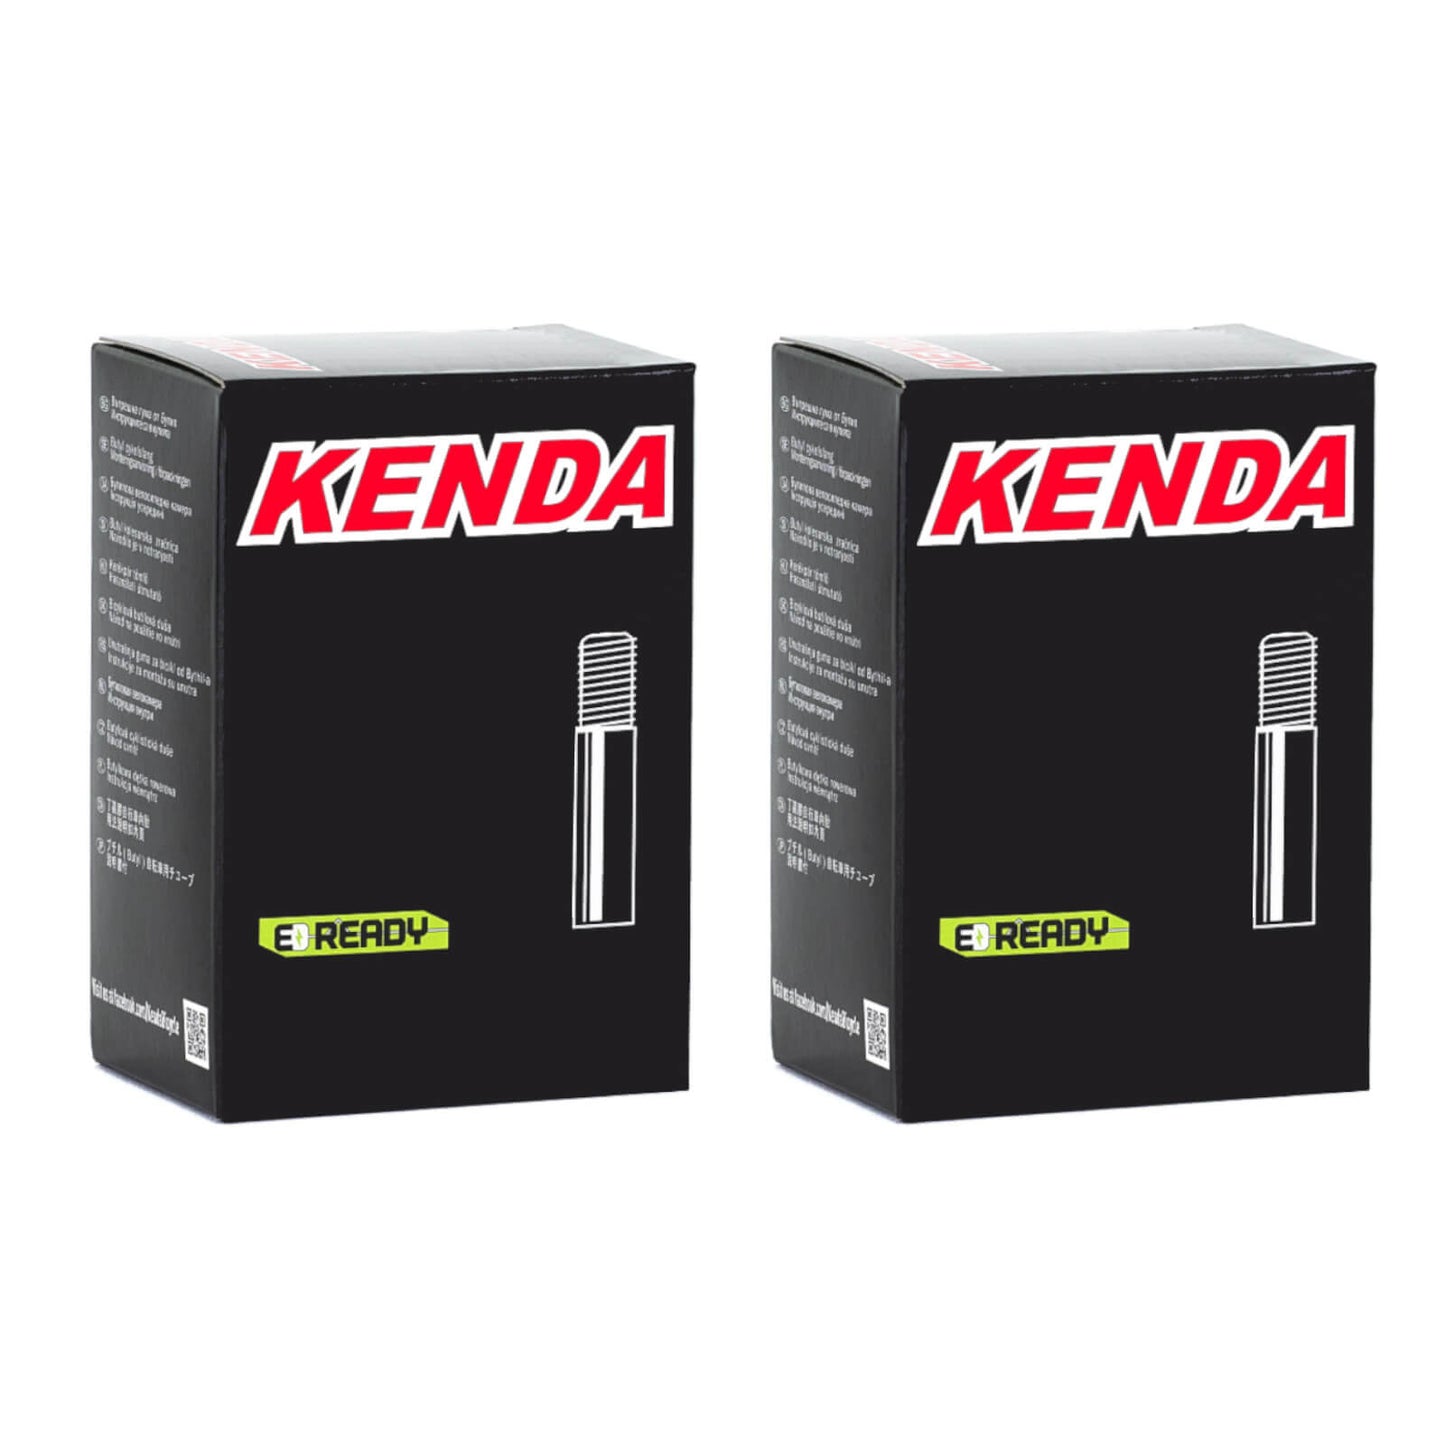 Kenda 16x1.25-1.9" 16 Inch Schrader Valve Bike Inner Tube Pack of 2